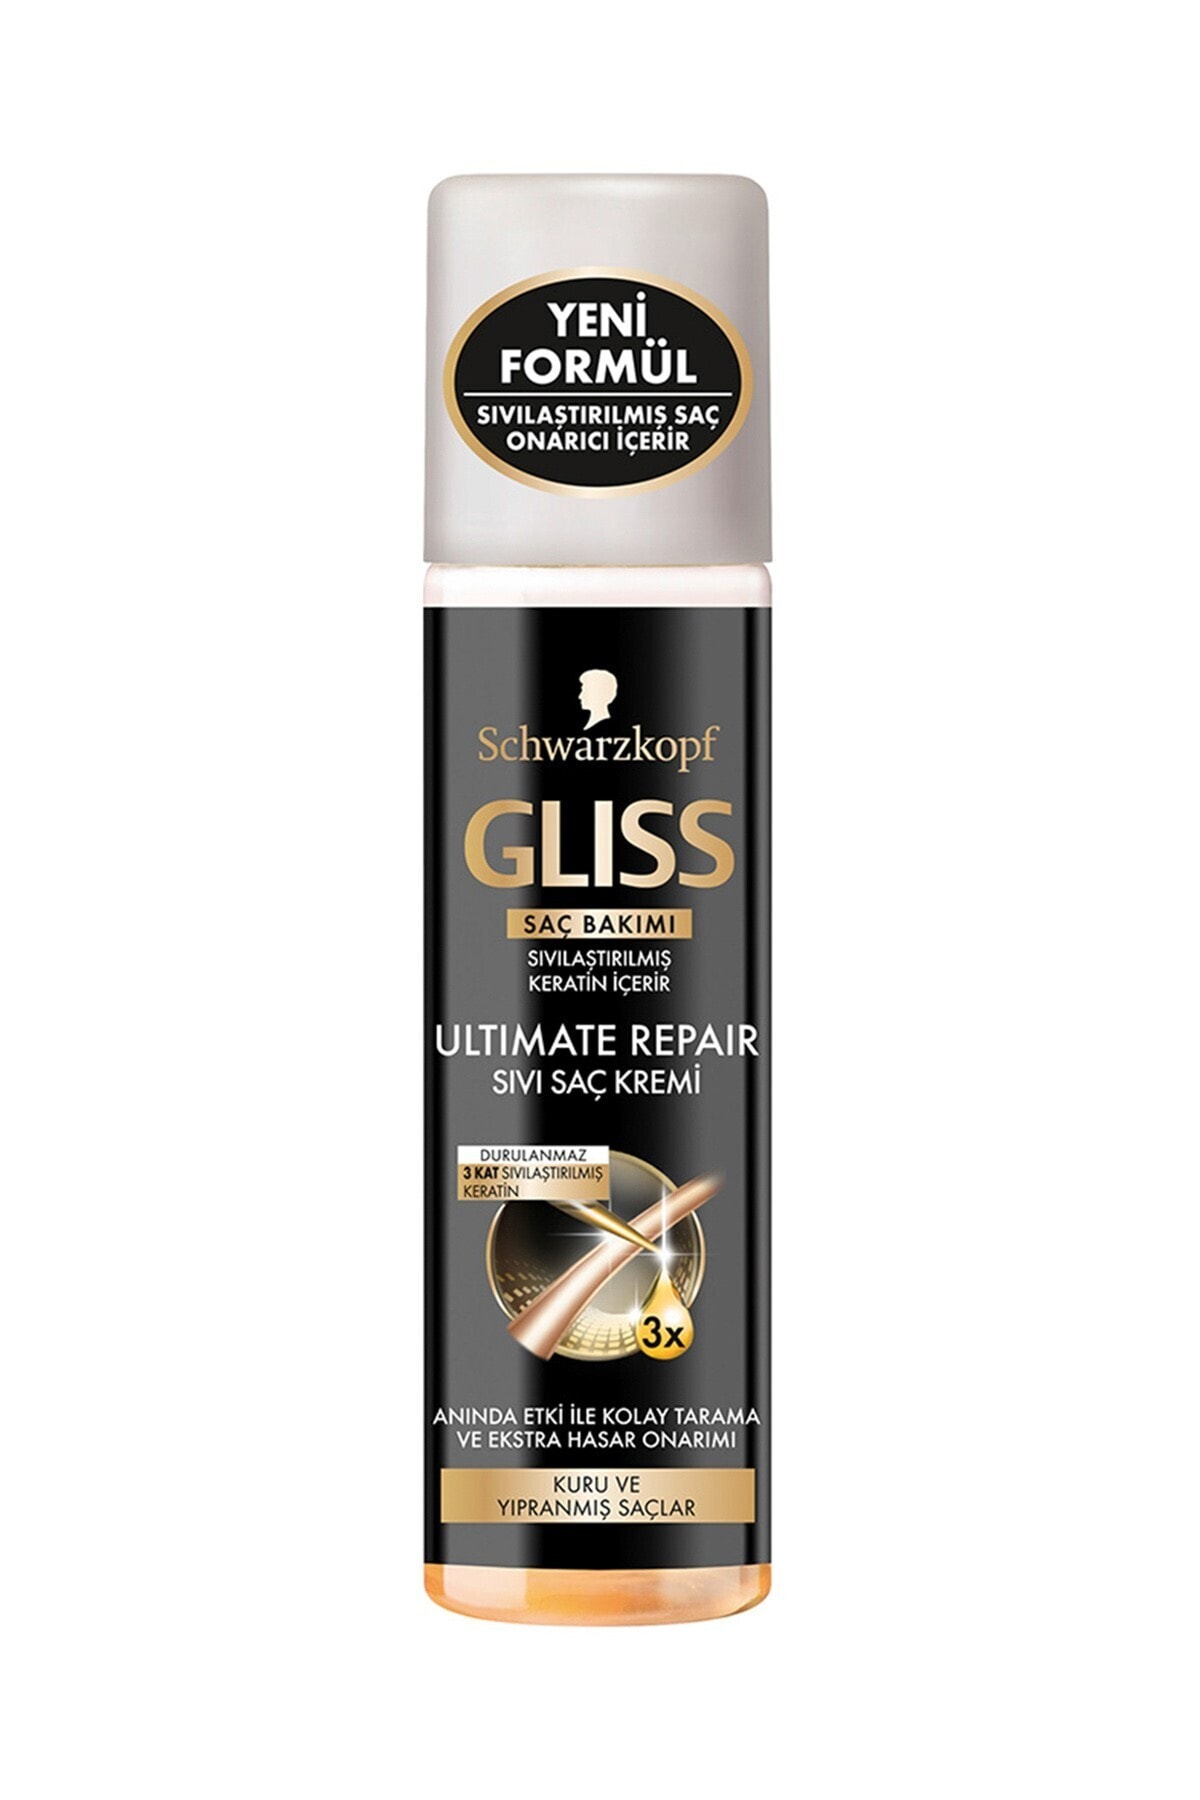 gliss kur hair repair szampon ultimate repair 400 ml